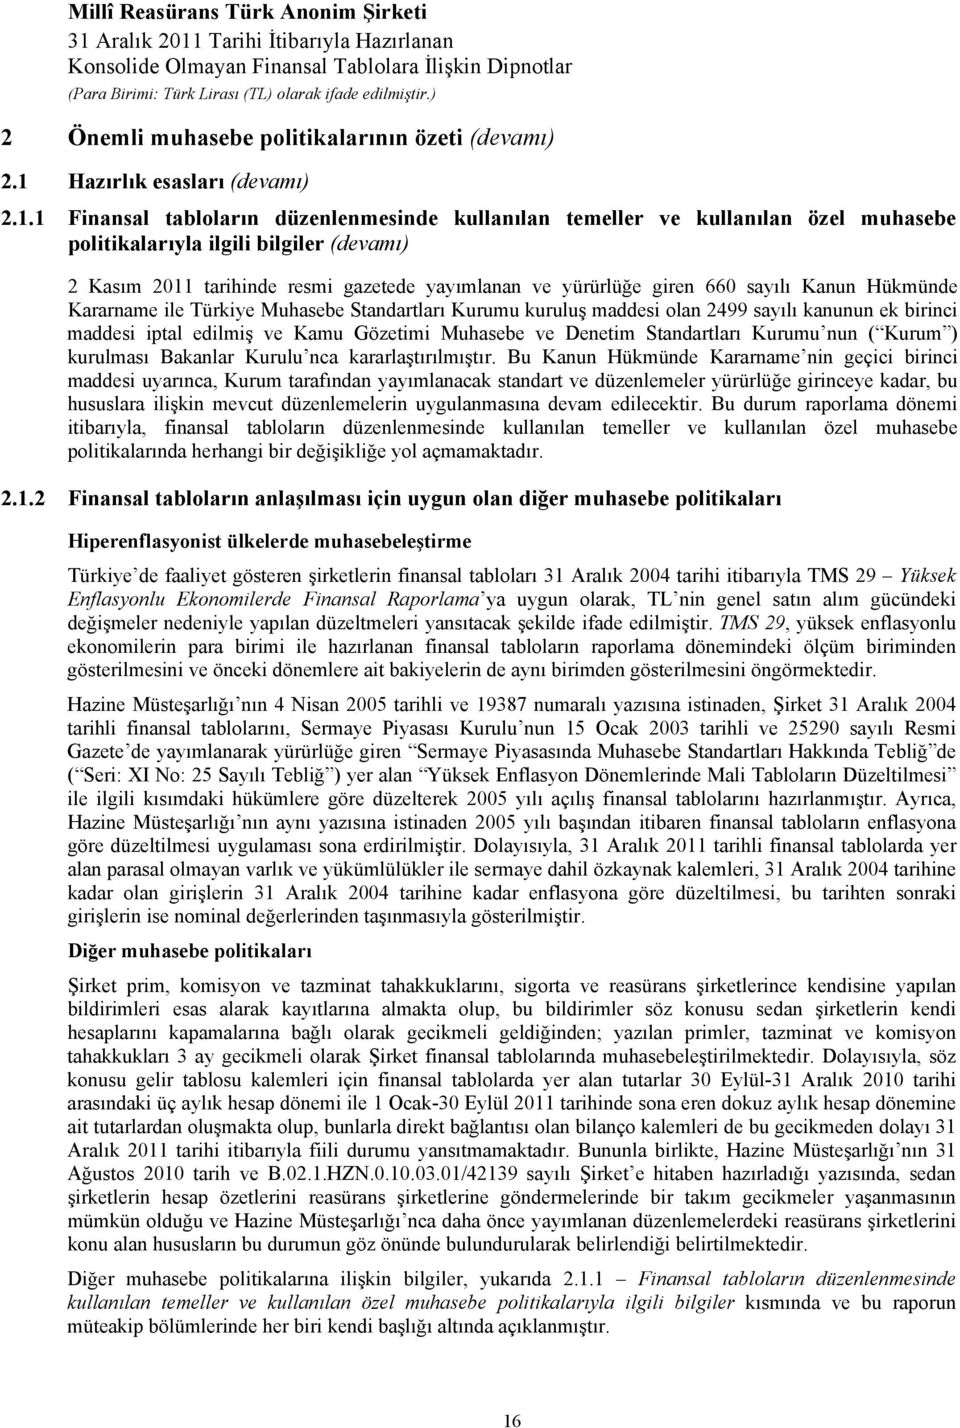 1 Finansal tabloların düzenlenmesinde kullanılan temeller ve kullanılan özel muhasebe politikalarıyla ilgili bilgiler (devamı) 2 Kasım 2011 tarihinde resmi gazetede yayımlanan ve yürürlüğe giren 660